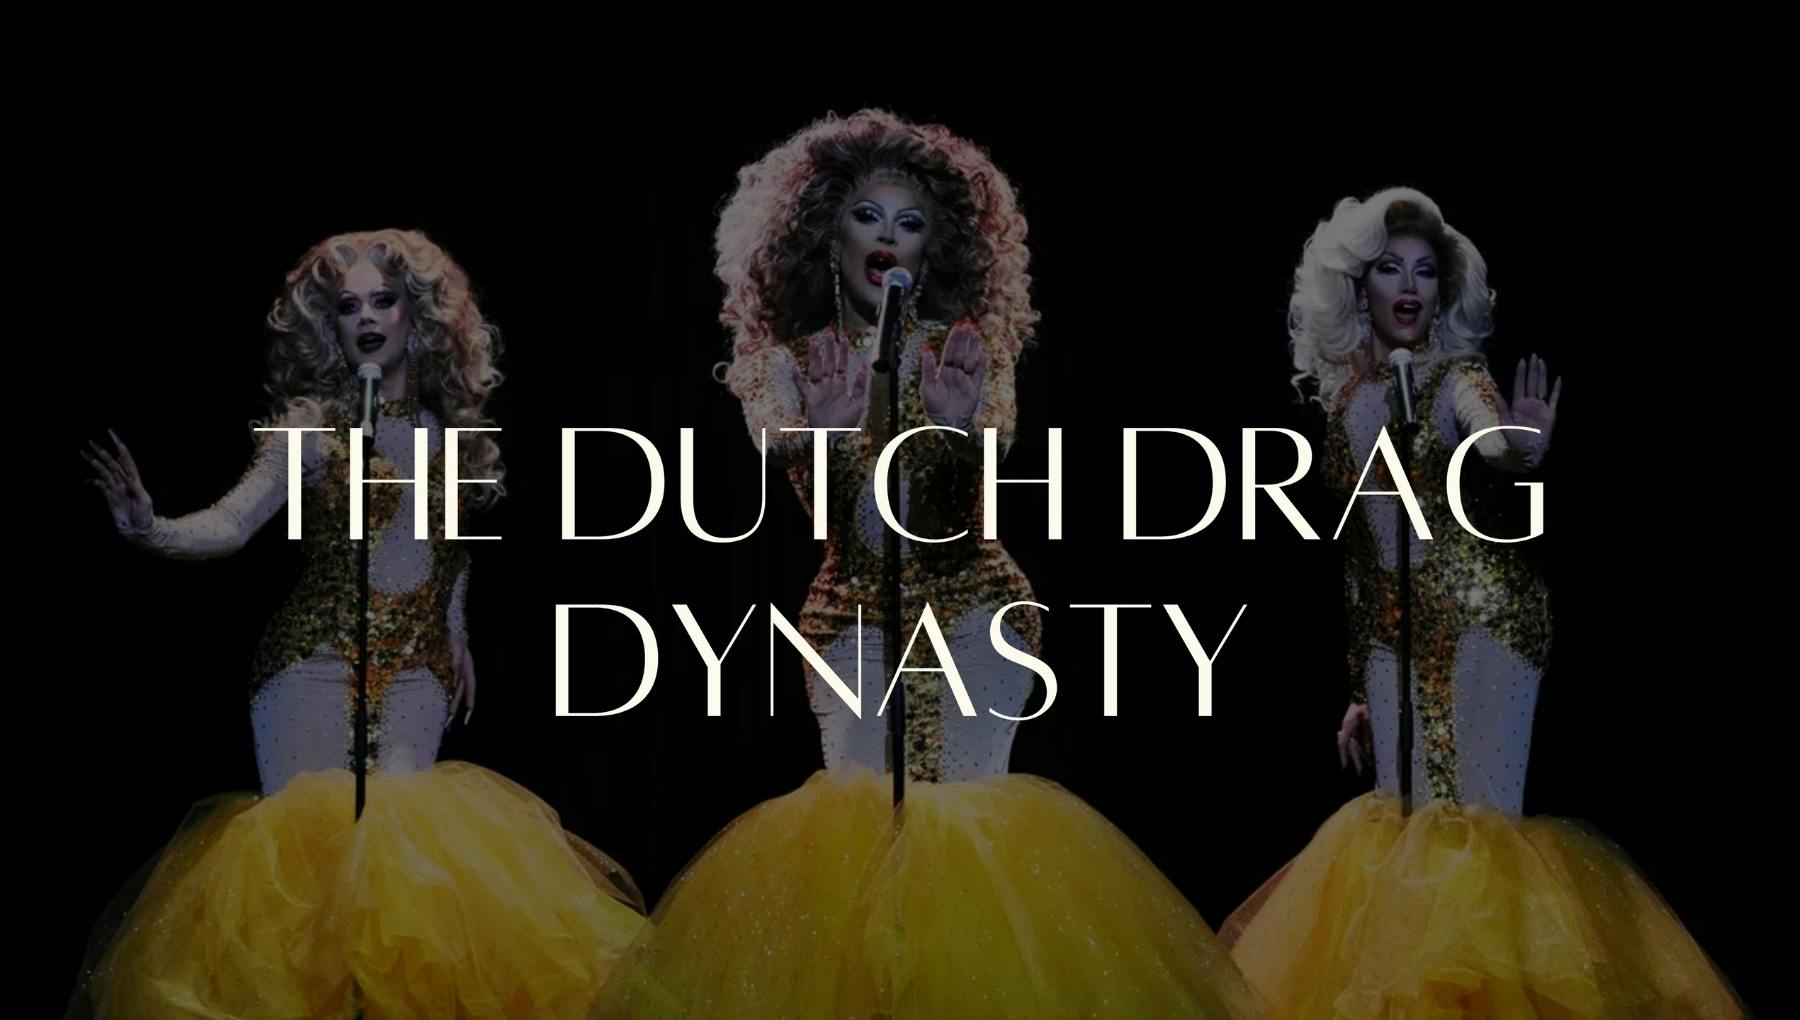 The Dutch Drag Dynasty